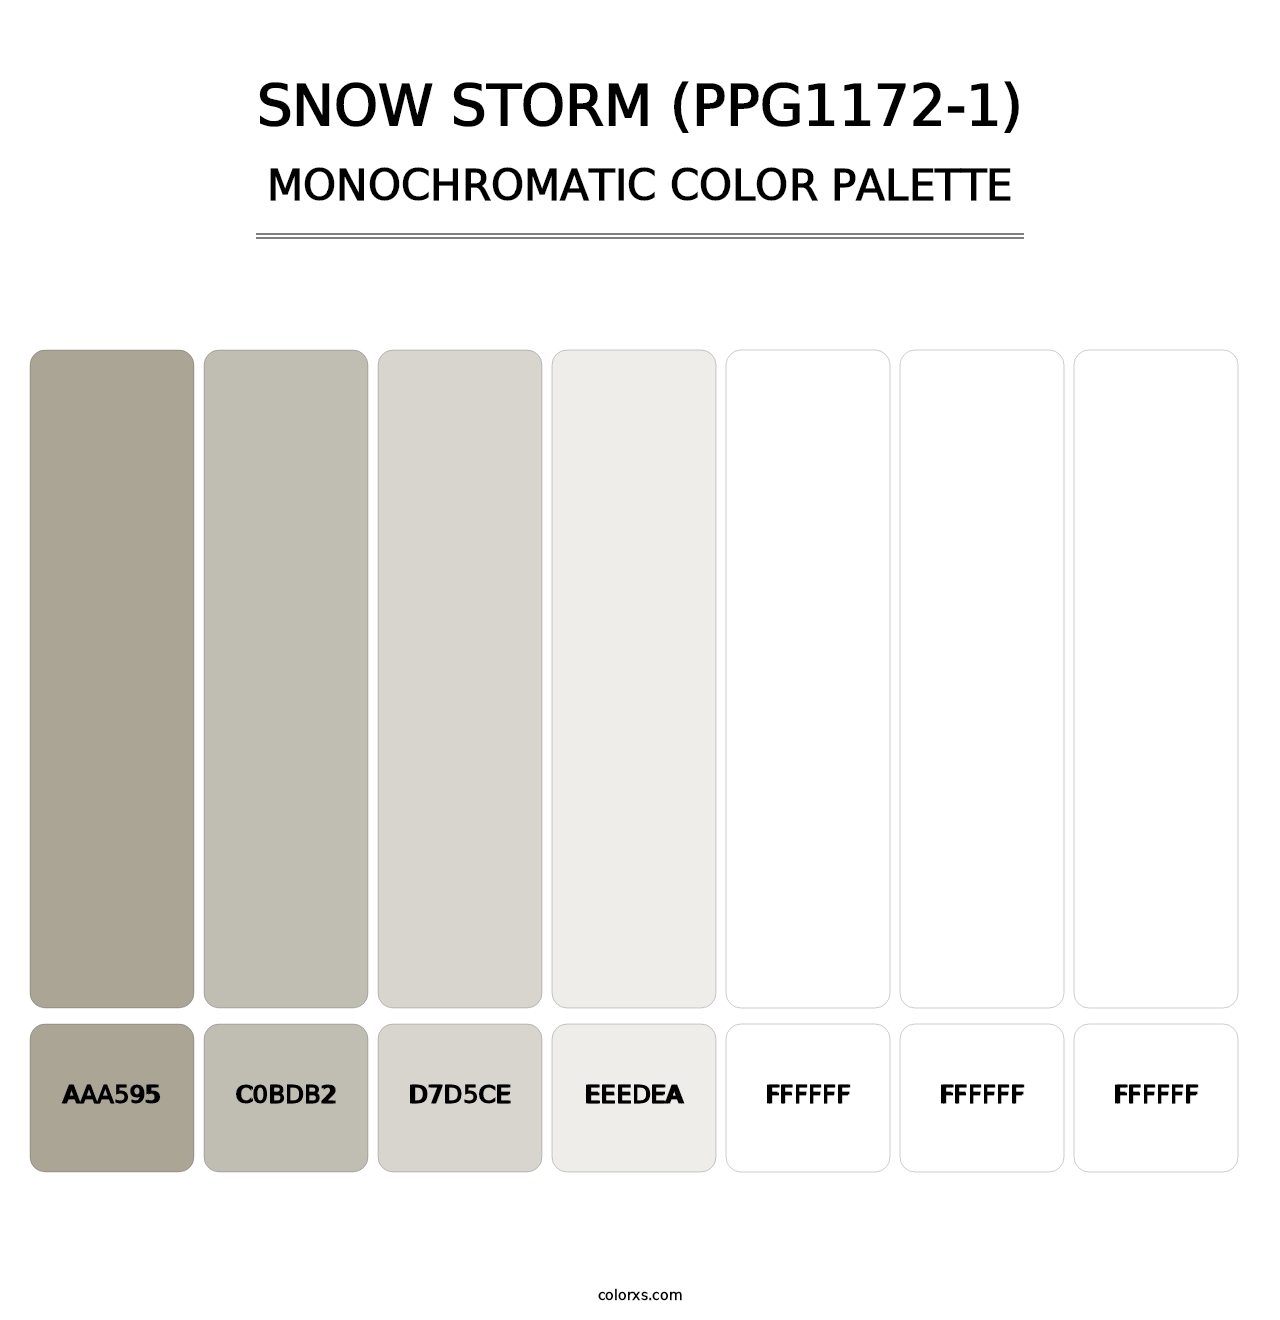 Snow Storm (PPG1172-1) - Monochromatic Color Palette